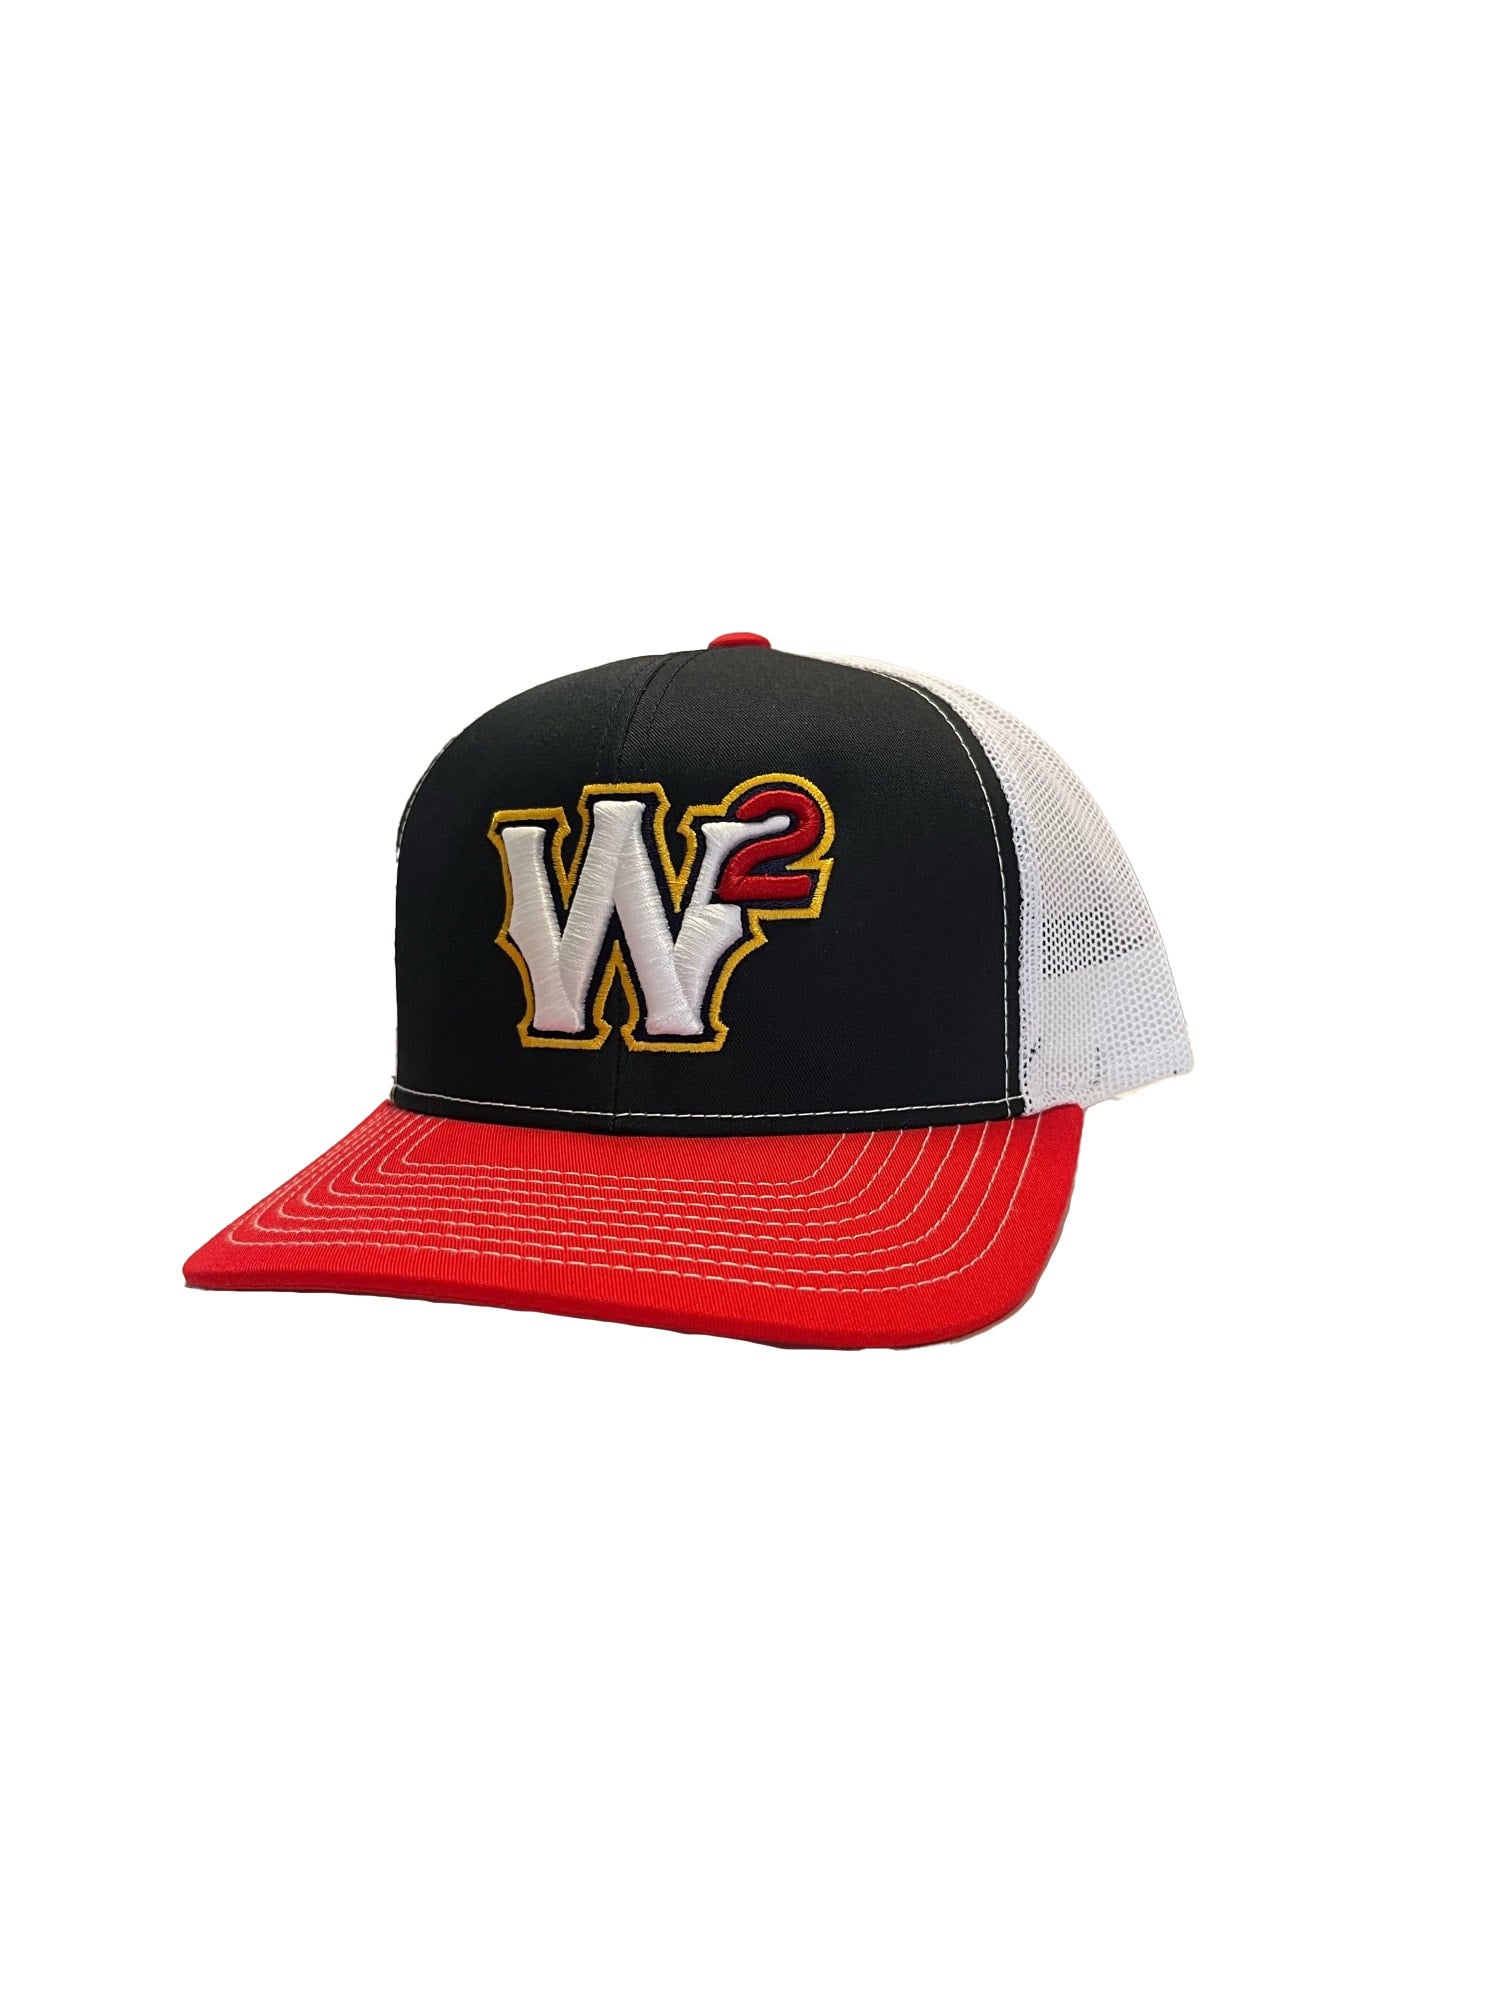 WWVBC Hat — T Walla Walla